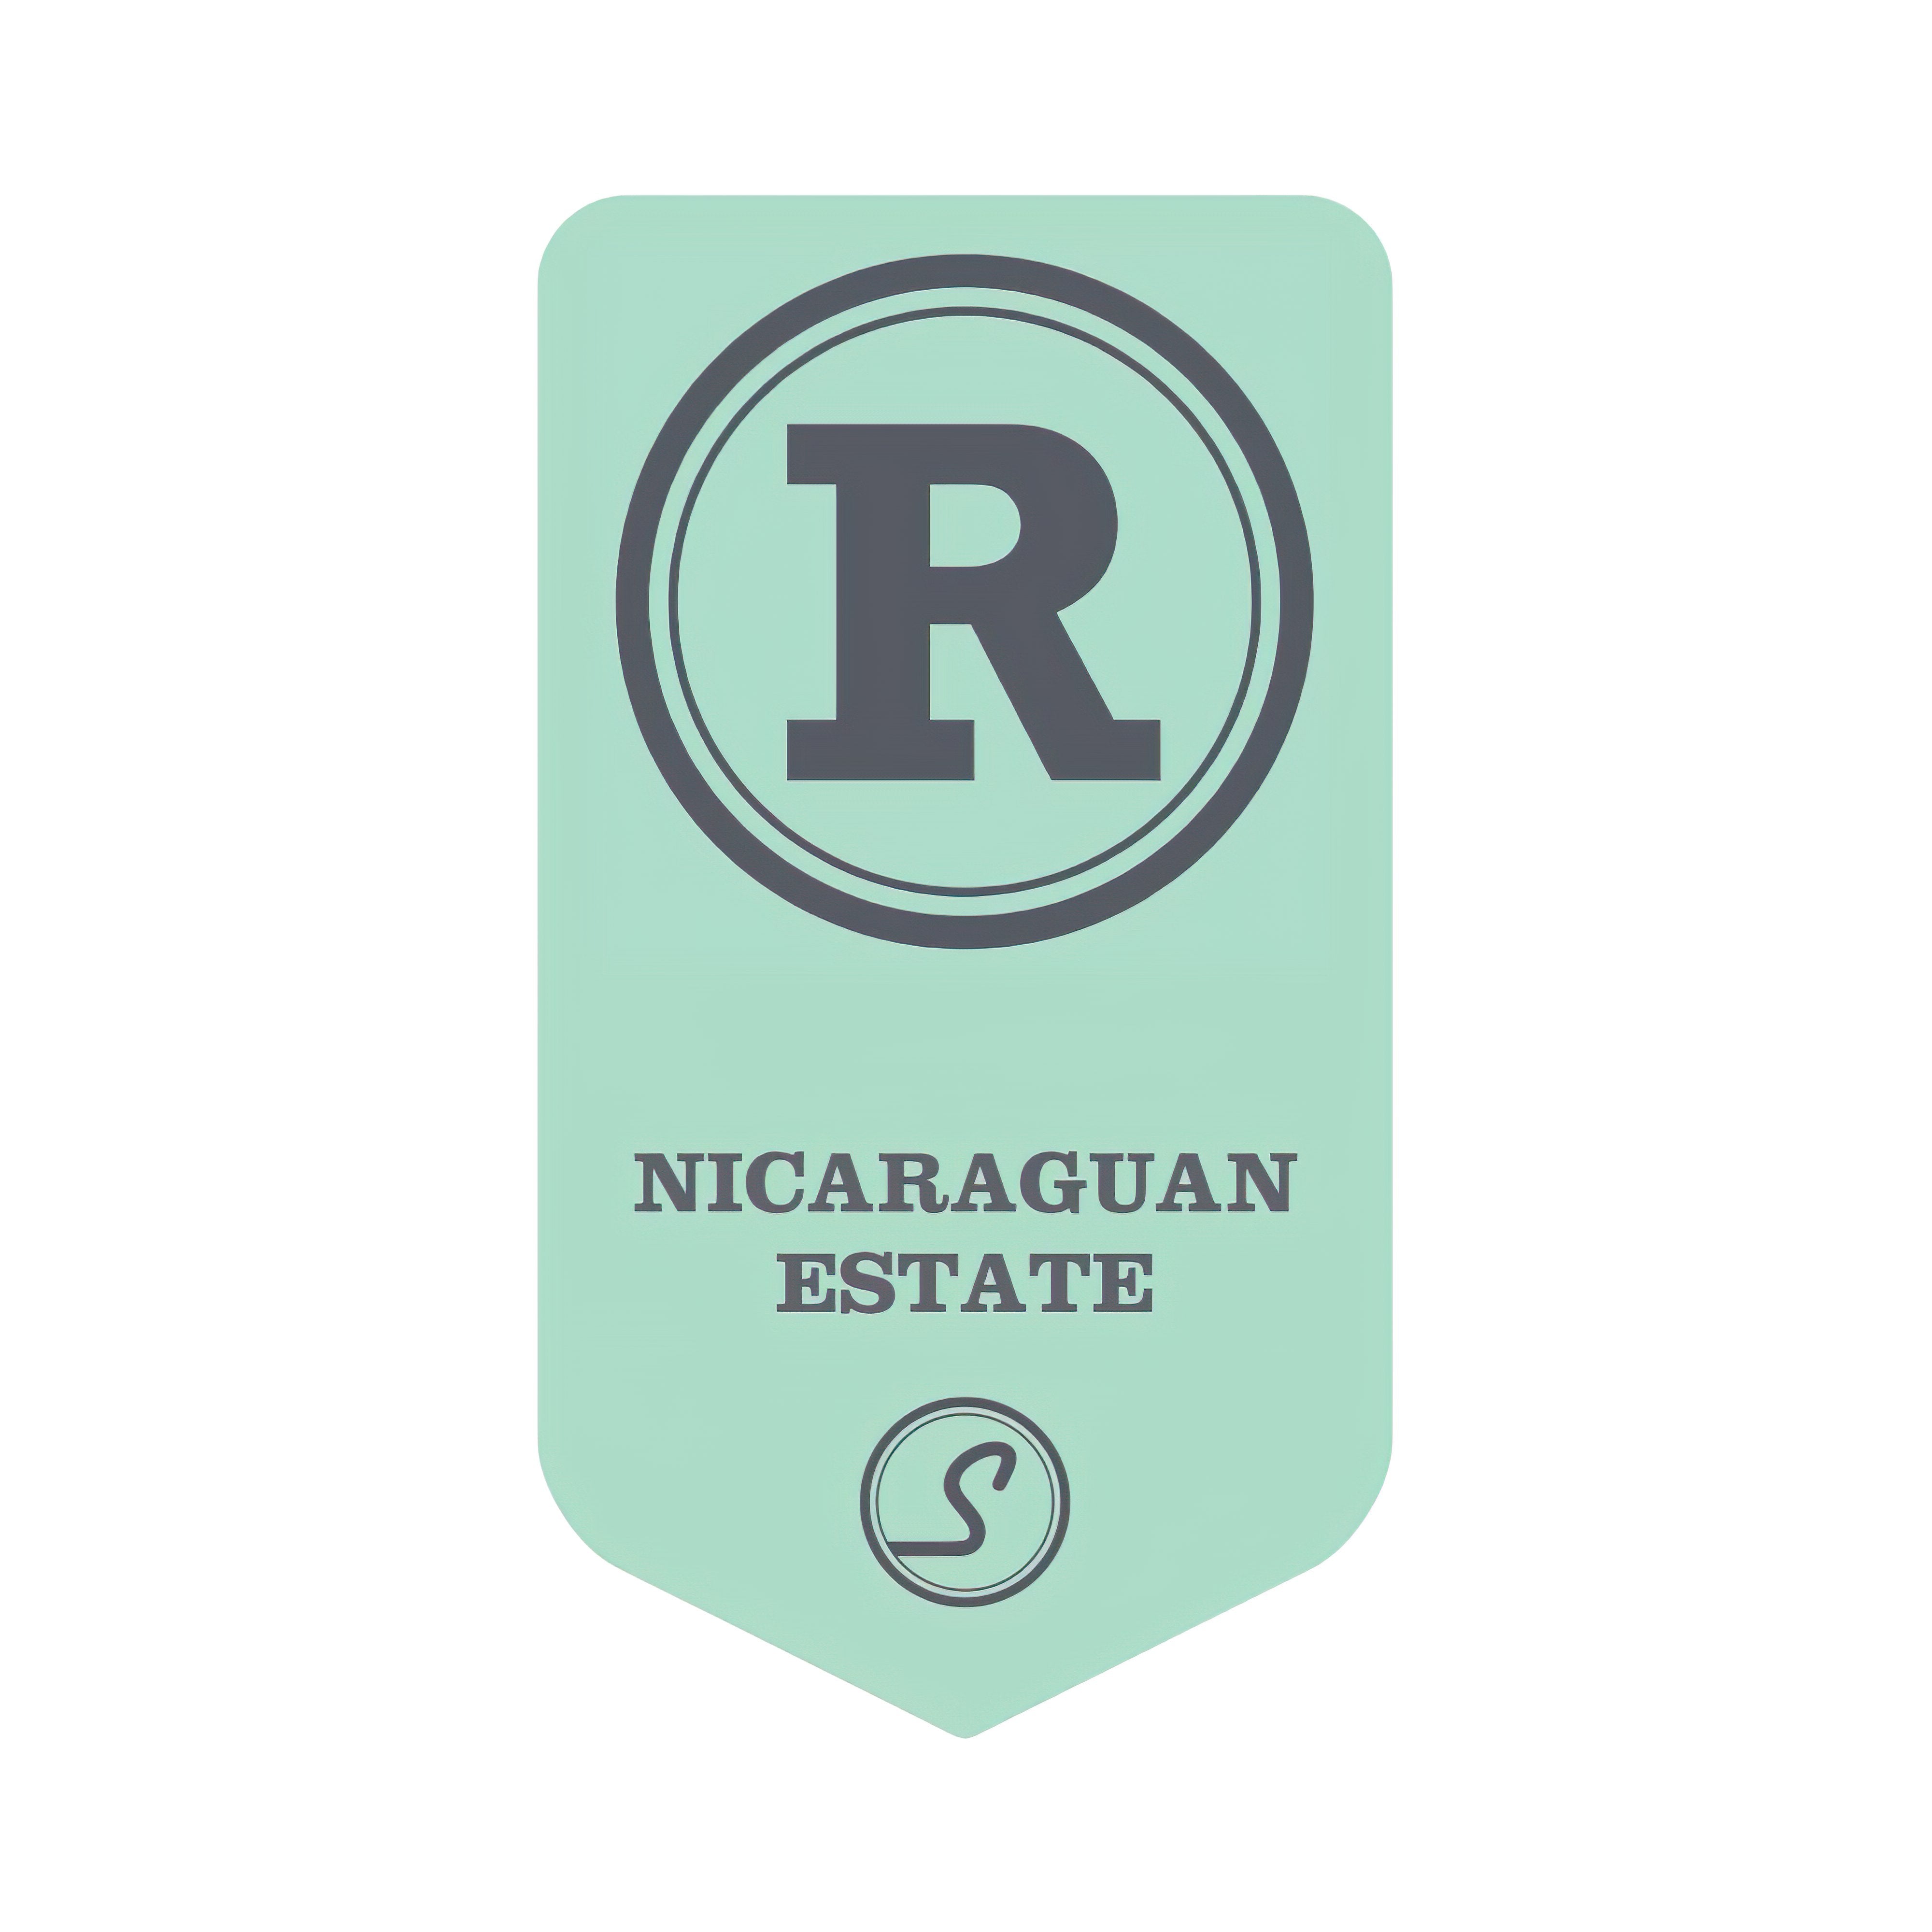 Nicaraguan Rainforest Alliance